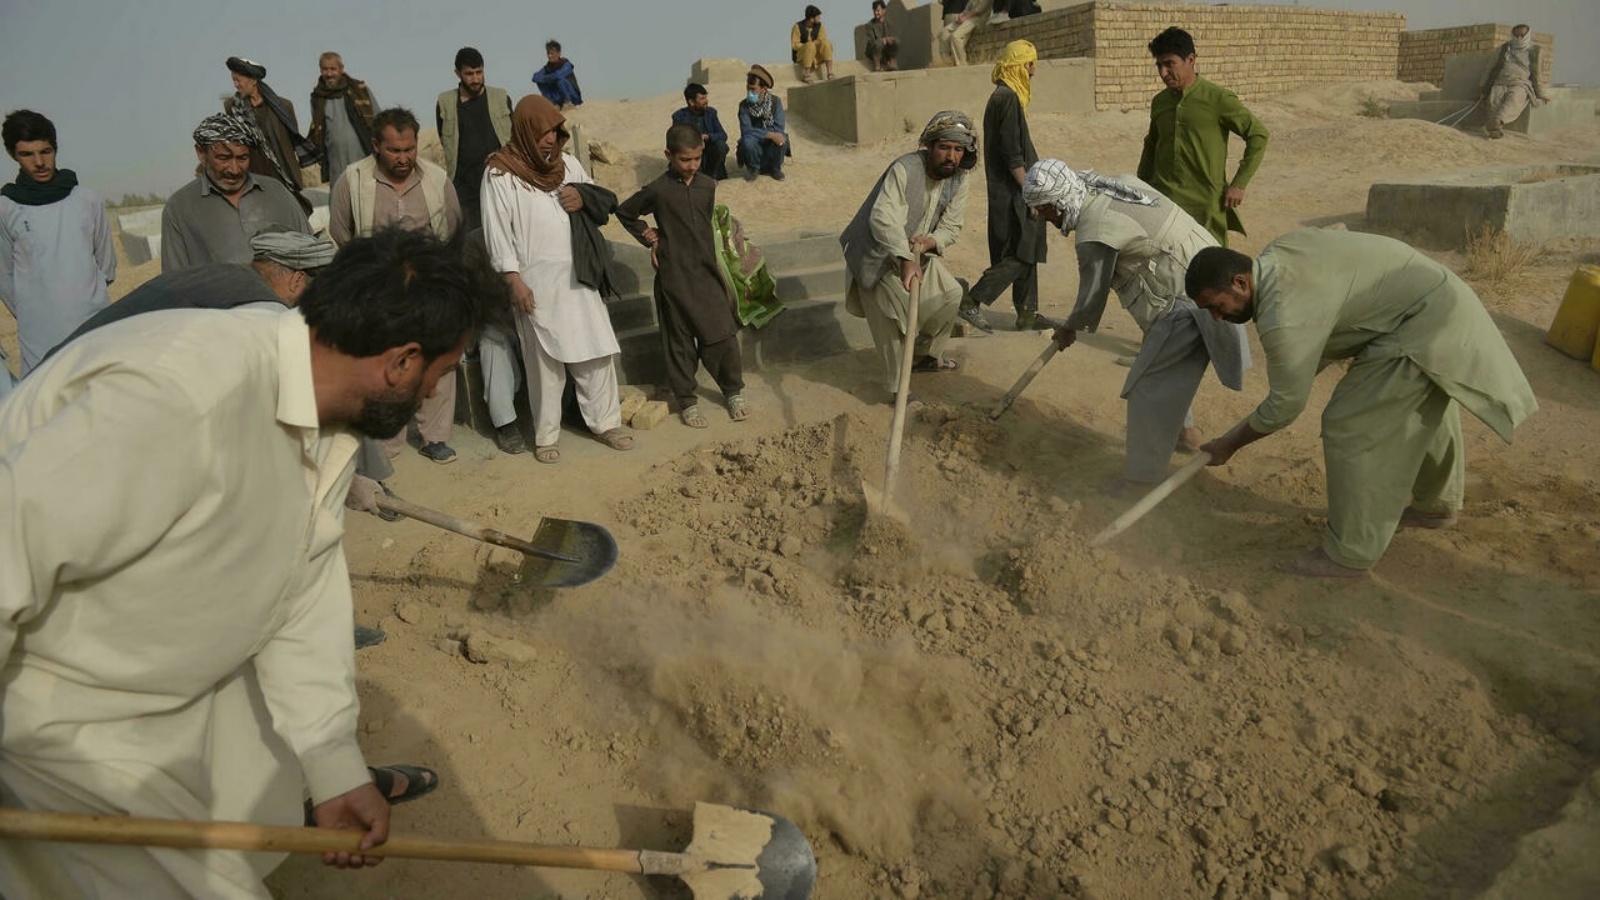 مشيعون من الأقلية الشيعية في أفغانستان يدفنون موتاهم بعد هجوم انتحاري تبناه تنظيم الدولة الإسلامية. بتاريخ 9 تشرين الأول/أكتوبر 2021.